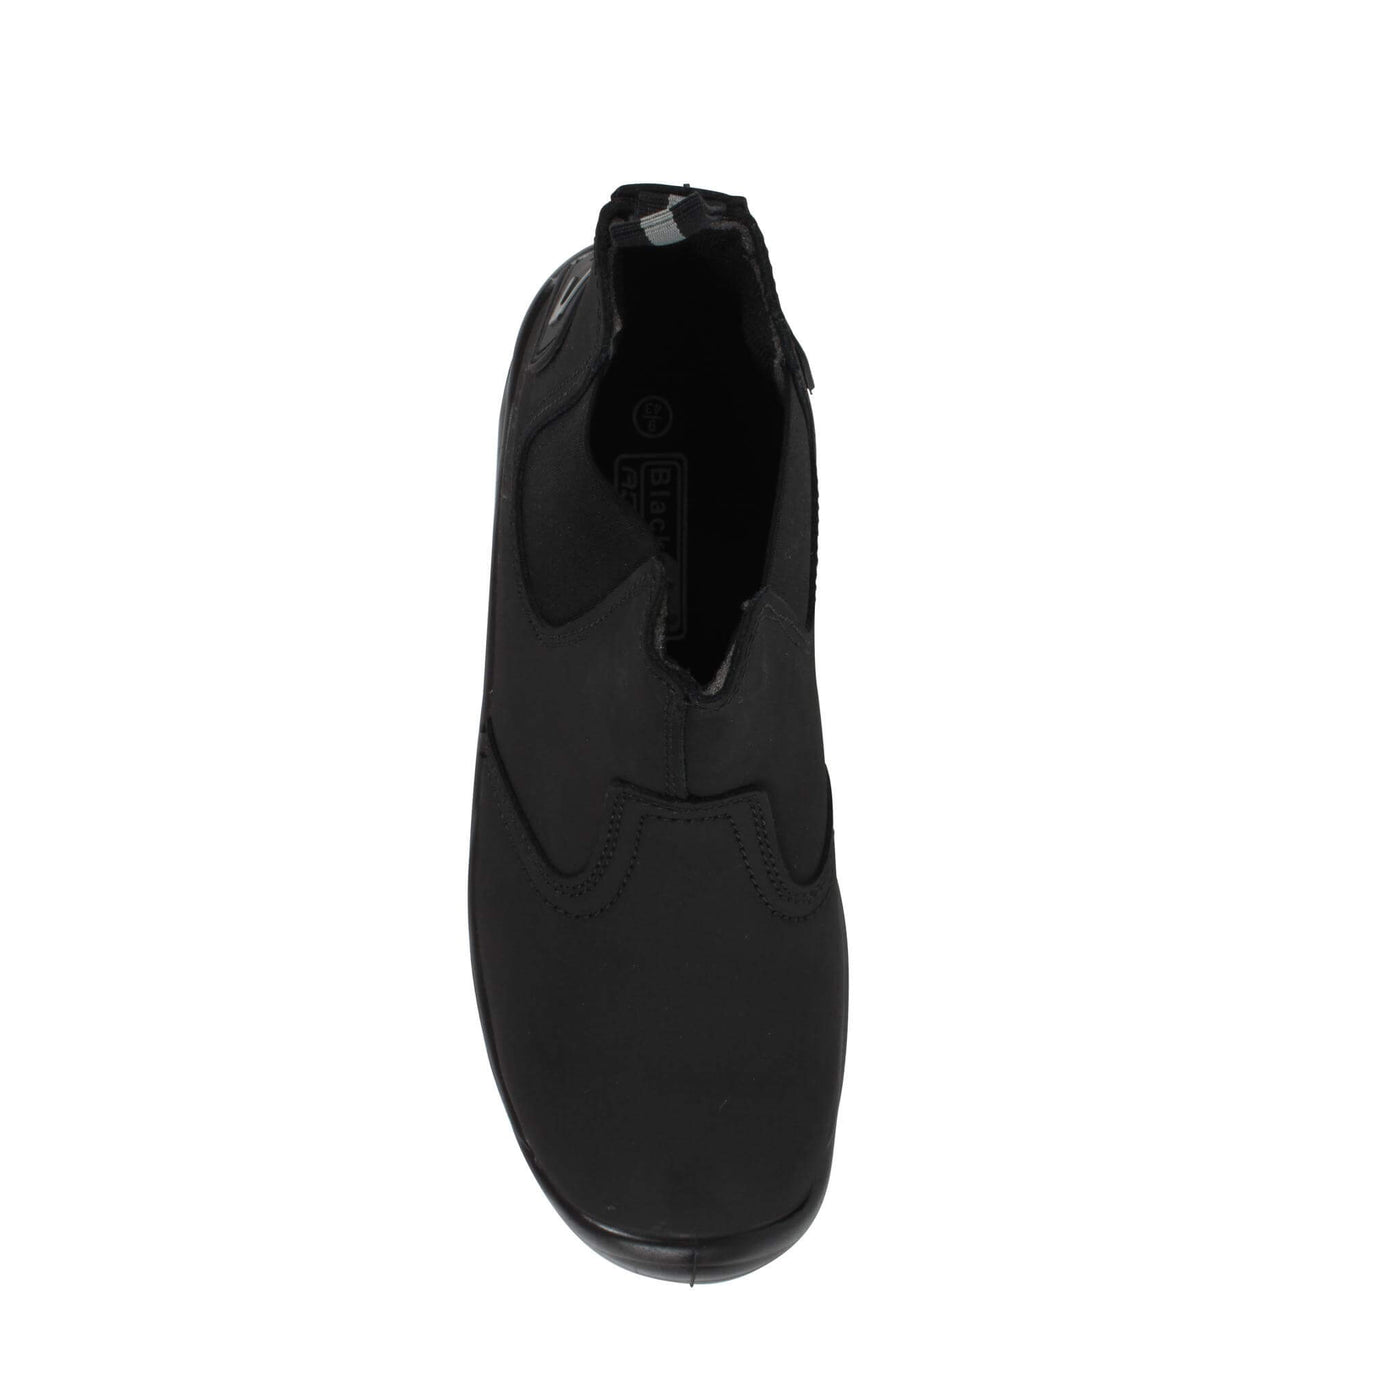 Blackrock Pendle Composite Dealer Safety Boots Black 6#colour_black